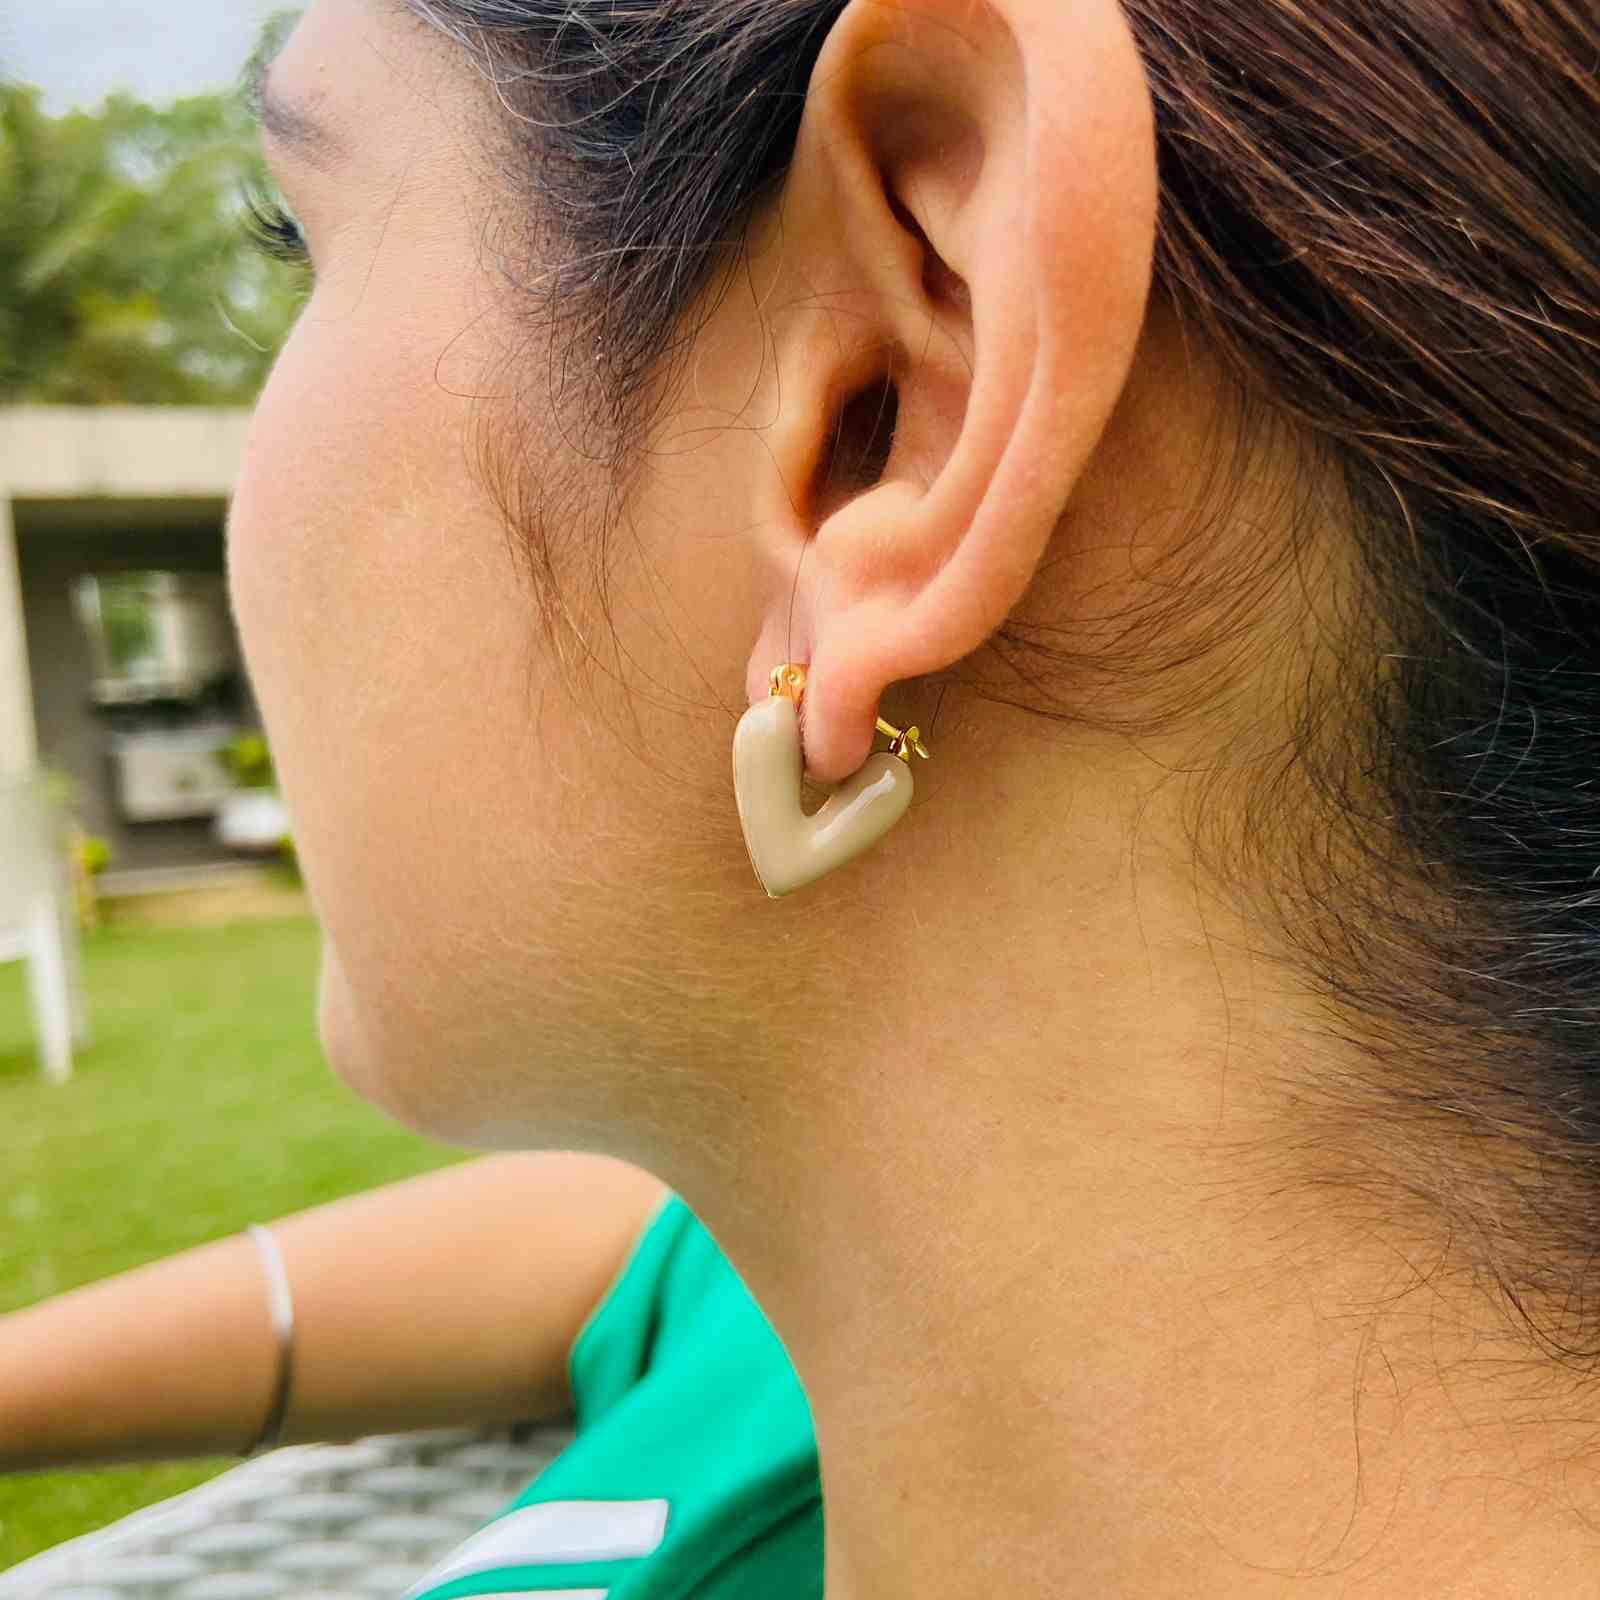 Bali Ear